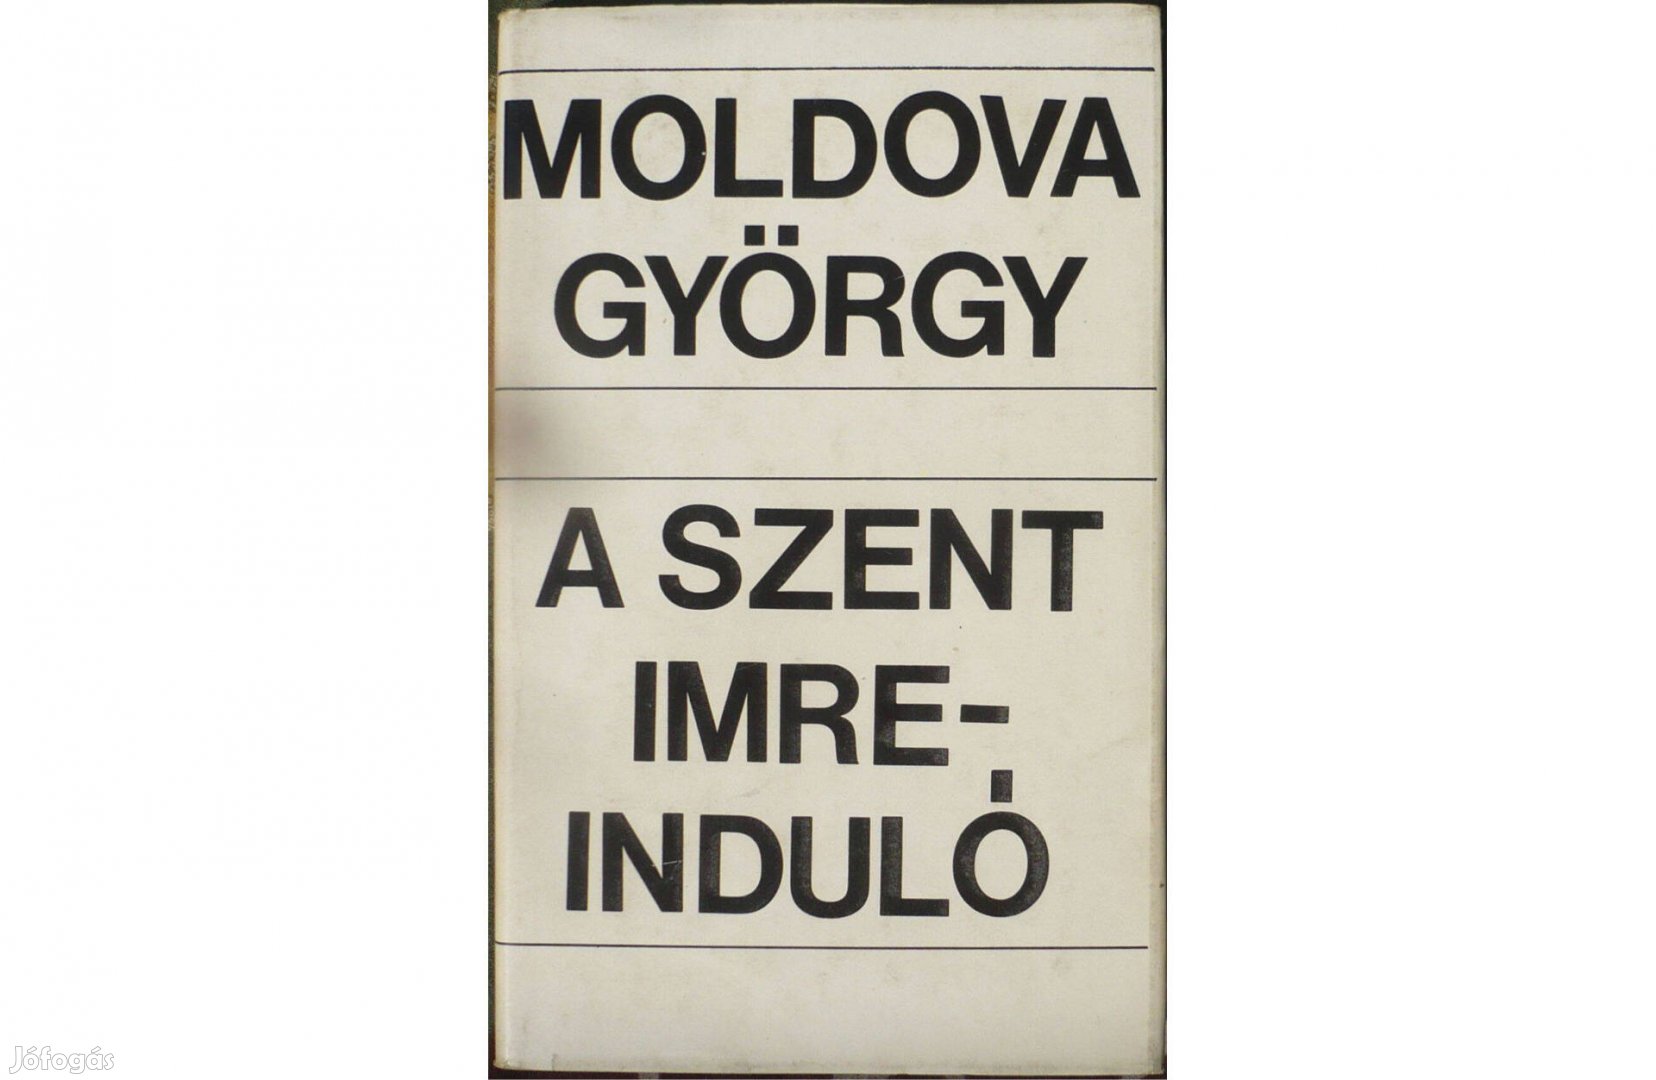 Moldova György: A Szent Imre-induló